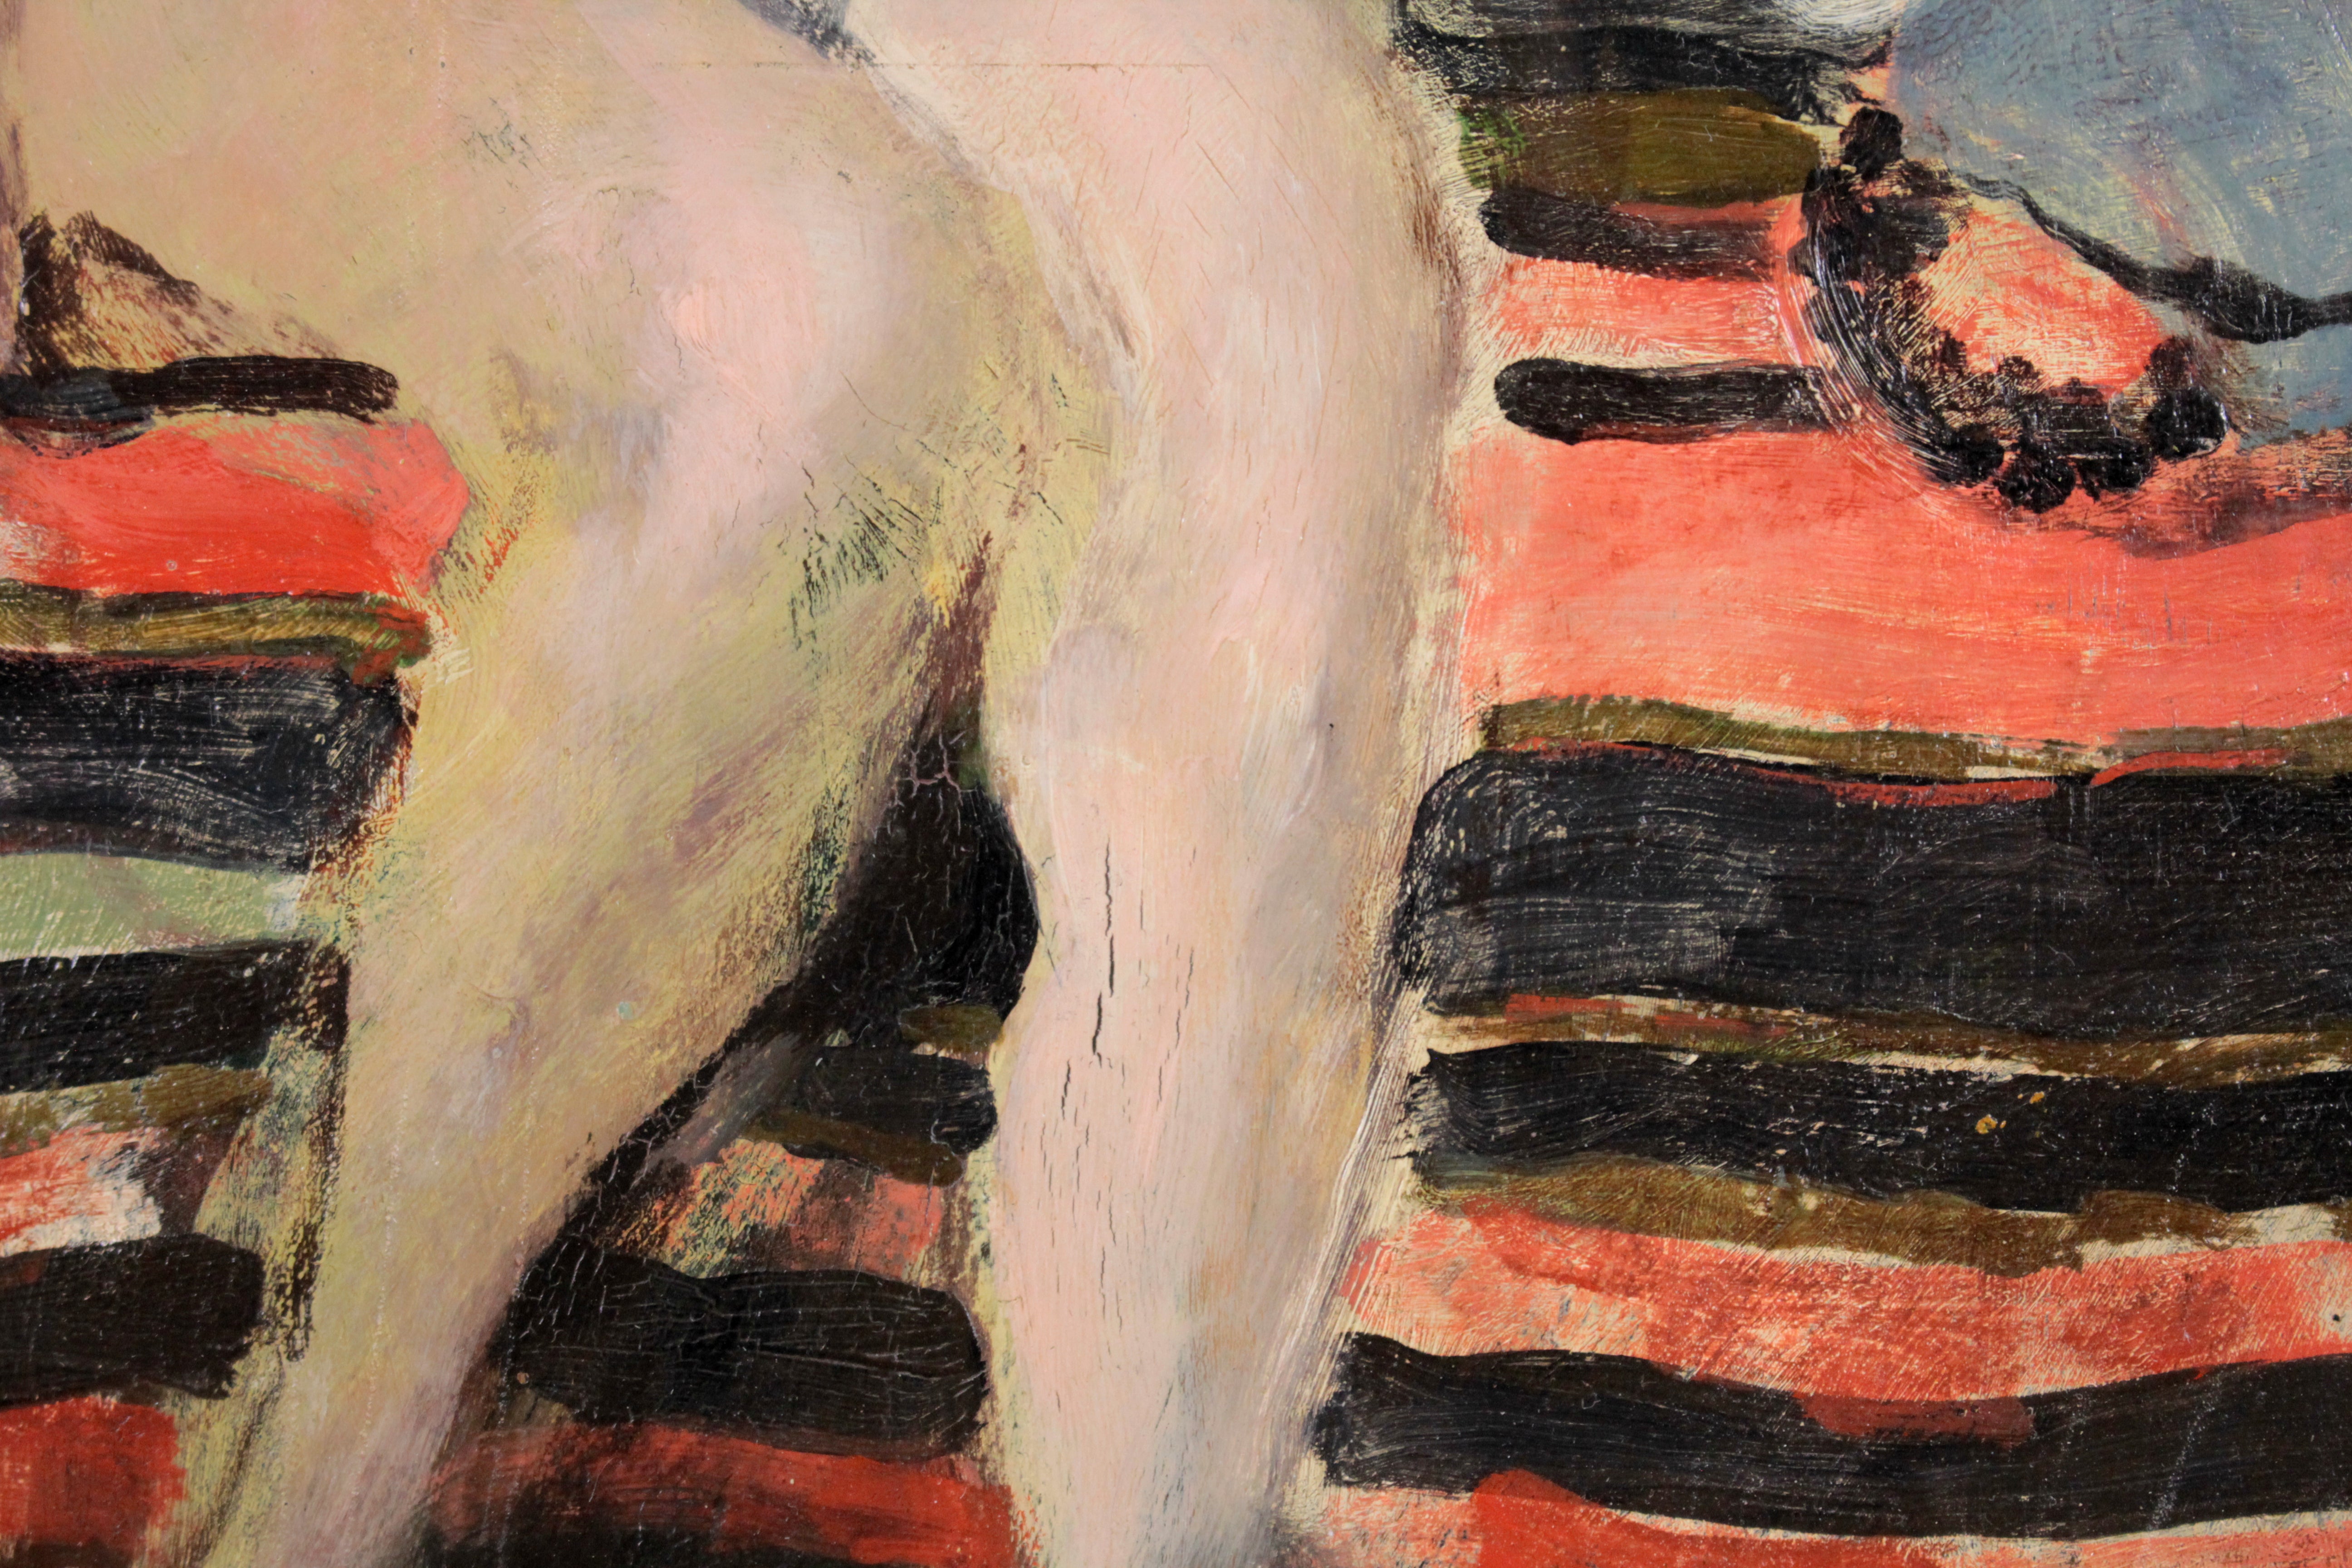 宮本三郎 『裸婦』 油彩画 - 北海道画廊